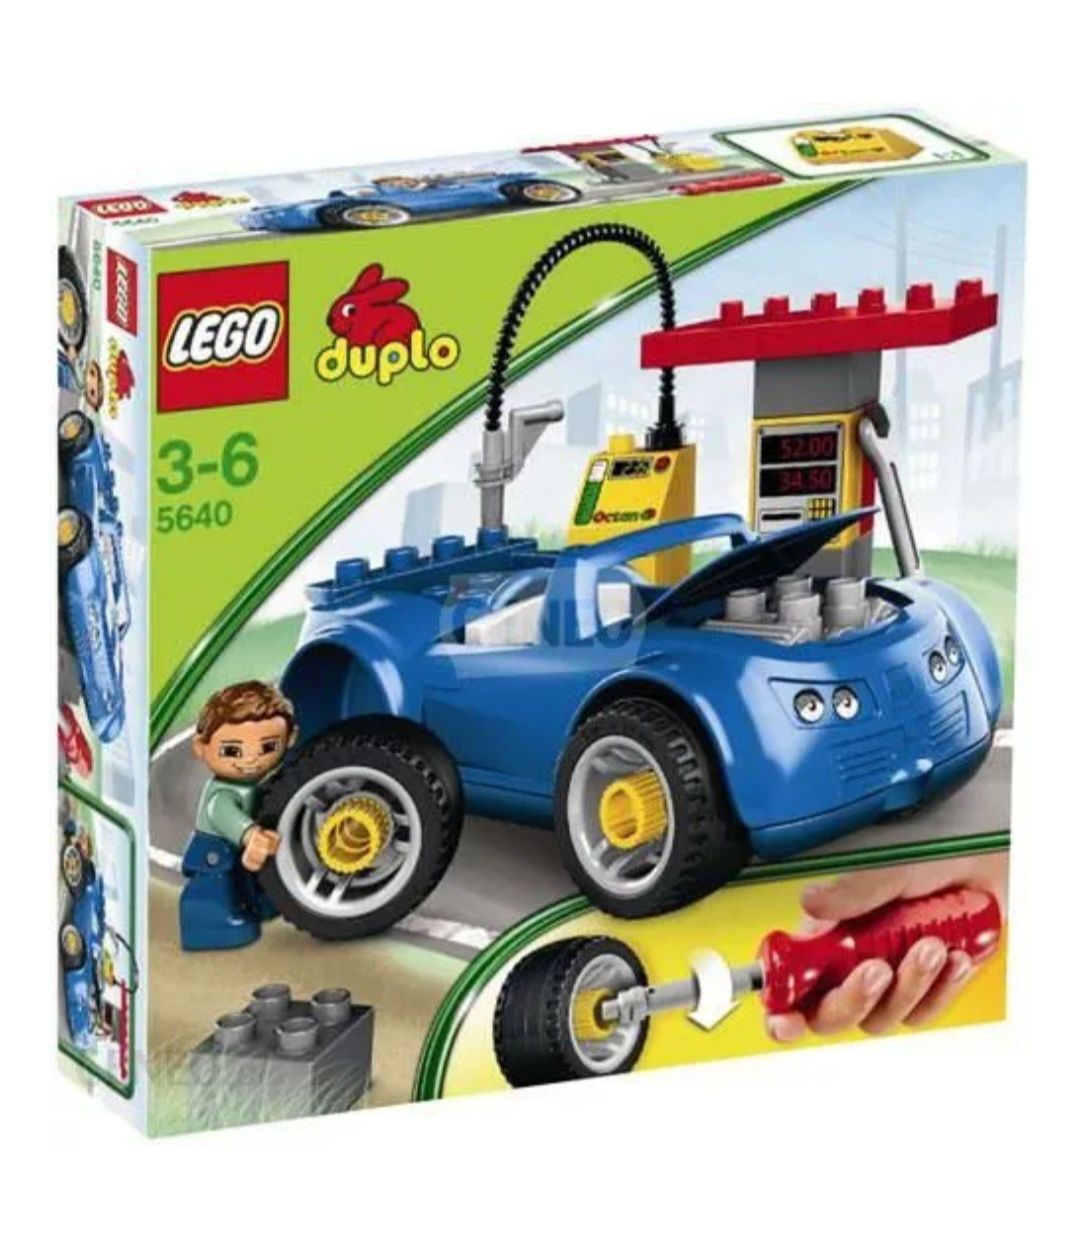 Lego duplo 5640 warsztat stacja benzynowa mechanik